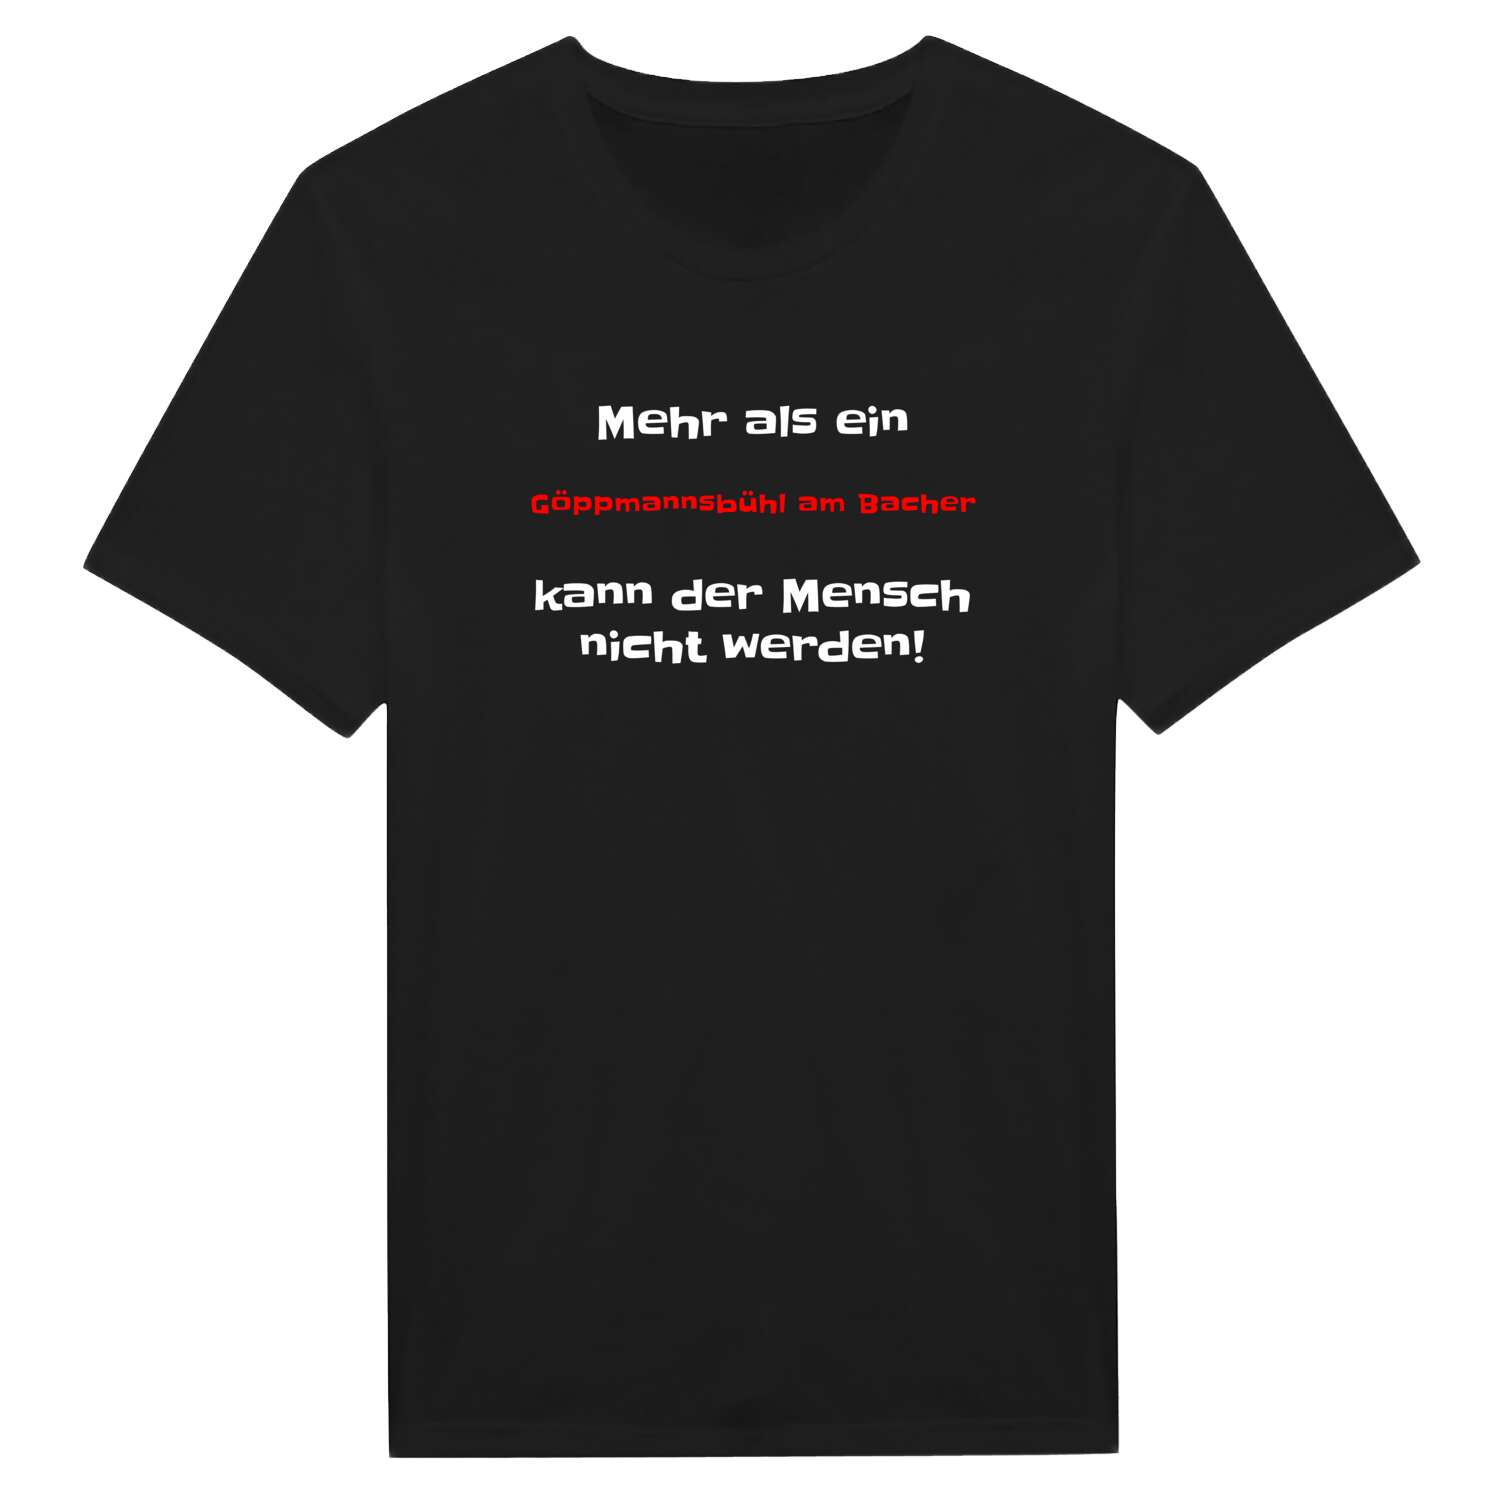 Göppmannsbühl am Bach T-Shirt »Mehr als ein«